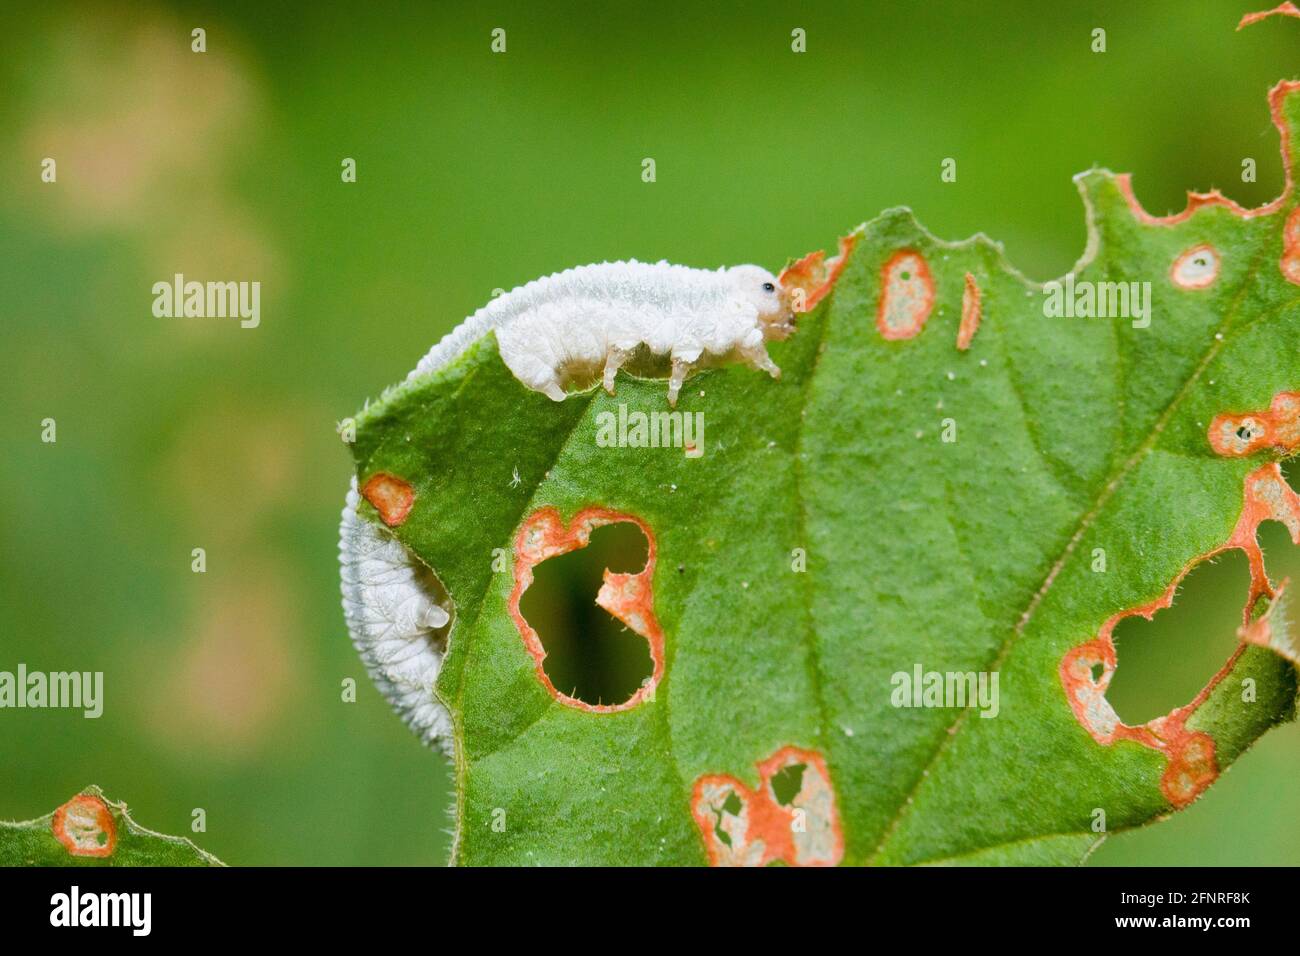 Larve de scierie mangeant des feuilles ( Tenthredinoidea ) - Etats-Unis Banque D'Images